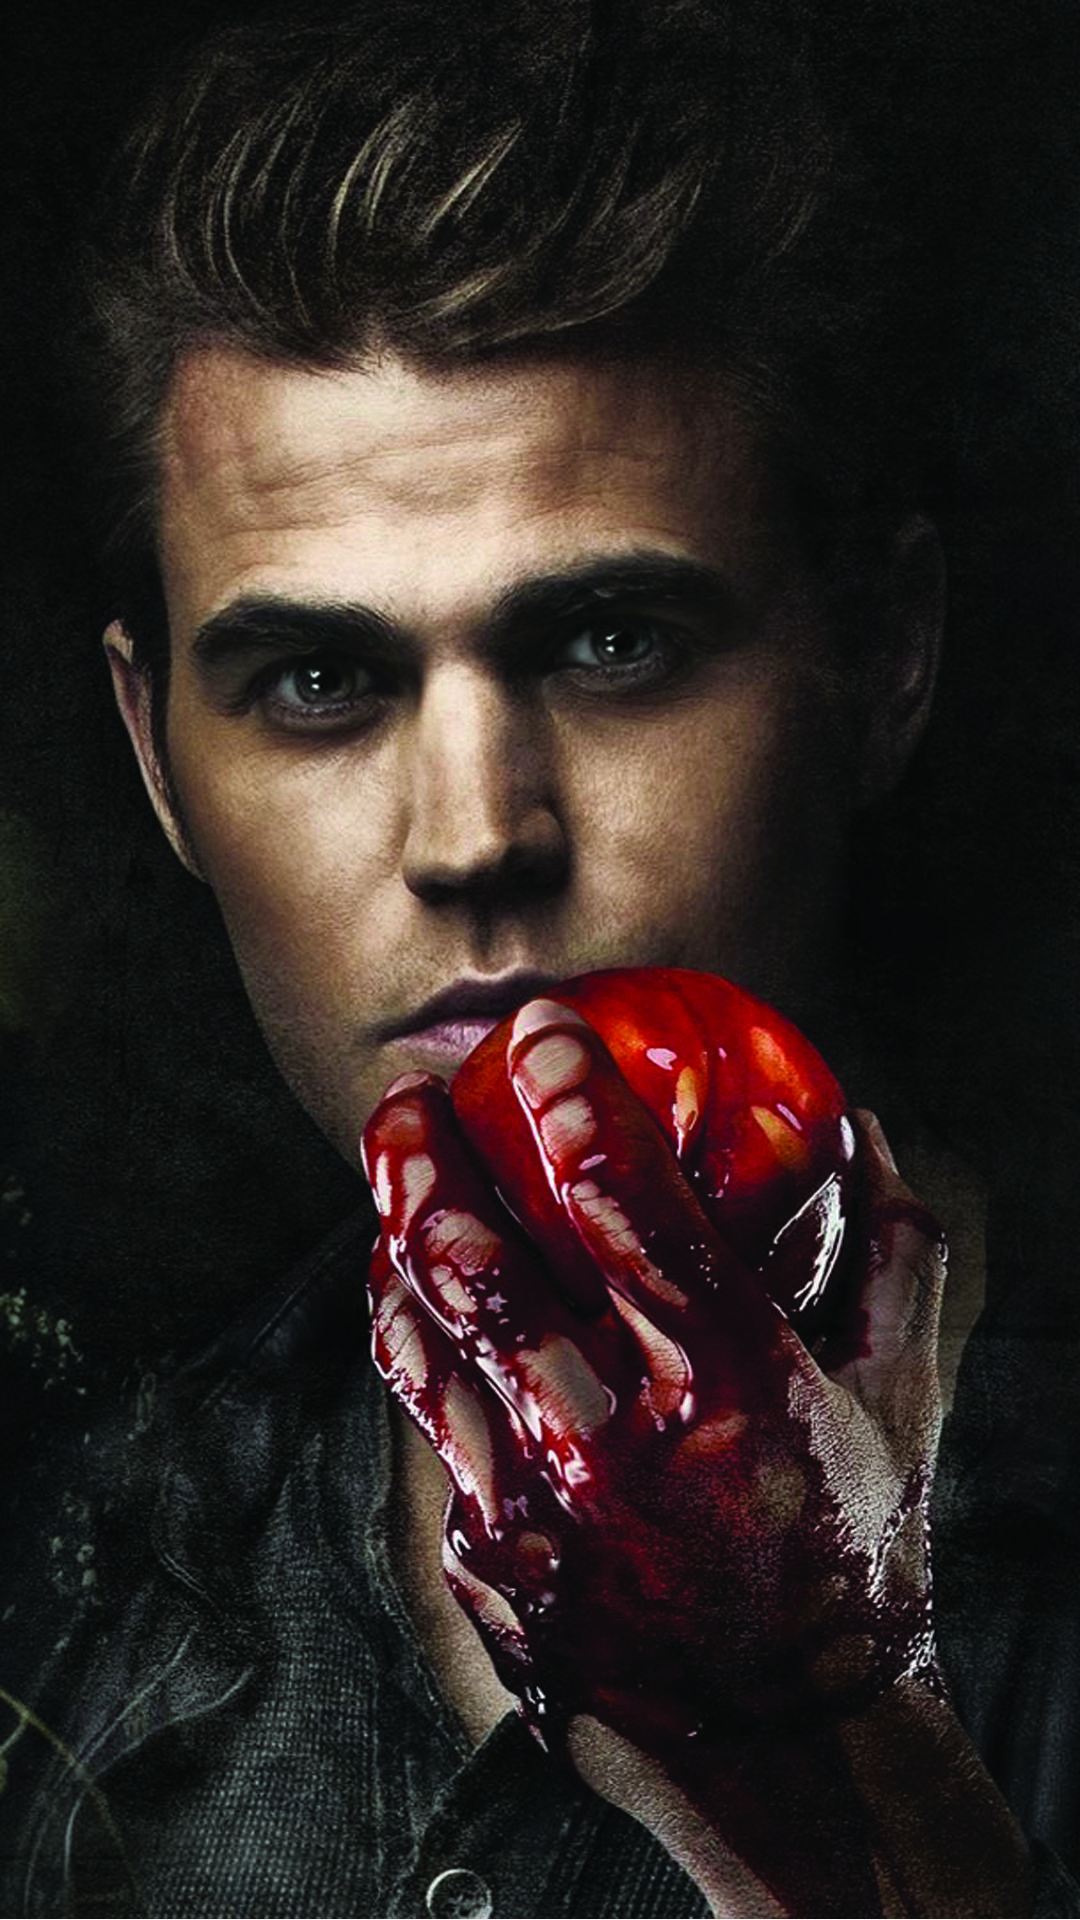 1080x1920 Stefan Salvatore Paul Wesley Vampire Diaries Android Wallpaper.jpg  (1080Ã1920) Vampire